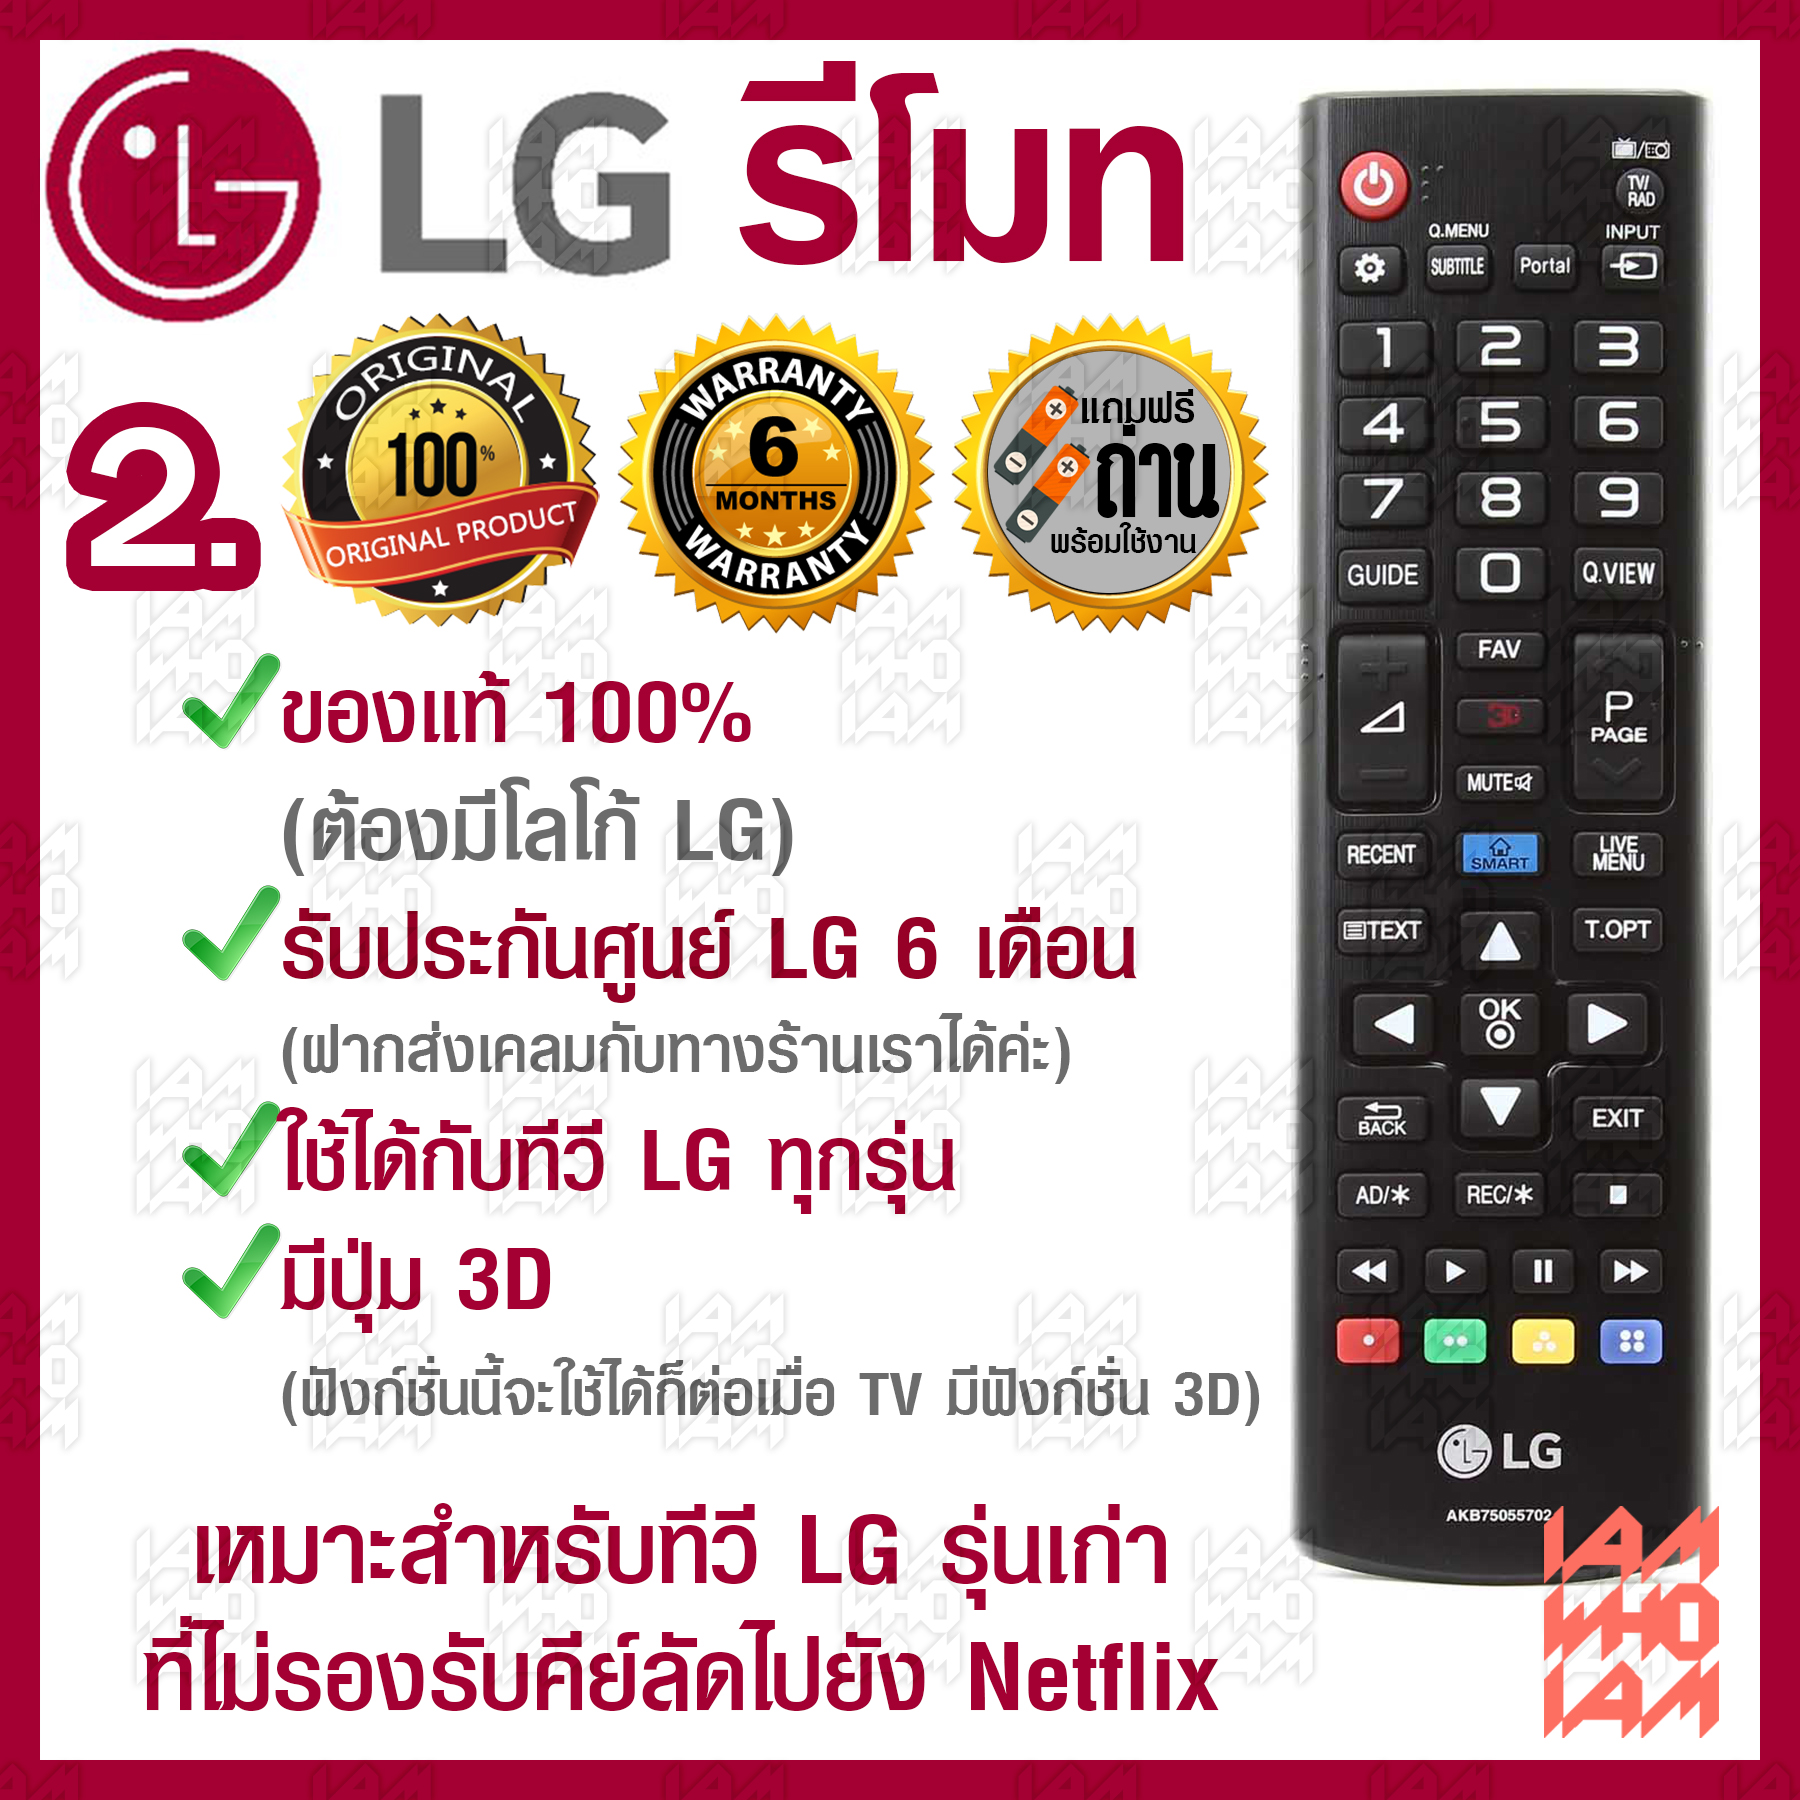 LG รีโมท ทีวี ใช้ได้กับทีวี LG ทุกรุ่น / ของแท้ รับประกันศูนย์ / มี 3 รุ่น / 1.มีปุ่ม Netflix / 2.มีปุ่ม 3D / 3.มีปุ่ม3D(รีโมททรงยาว/รุ่นเก่า)